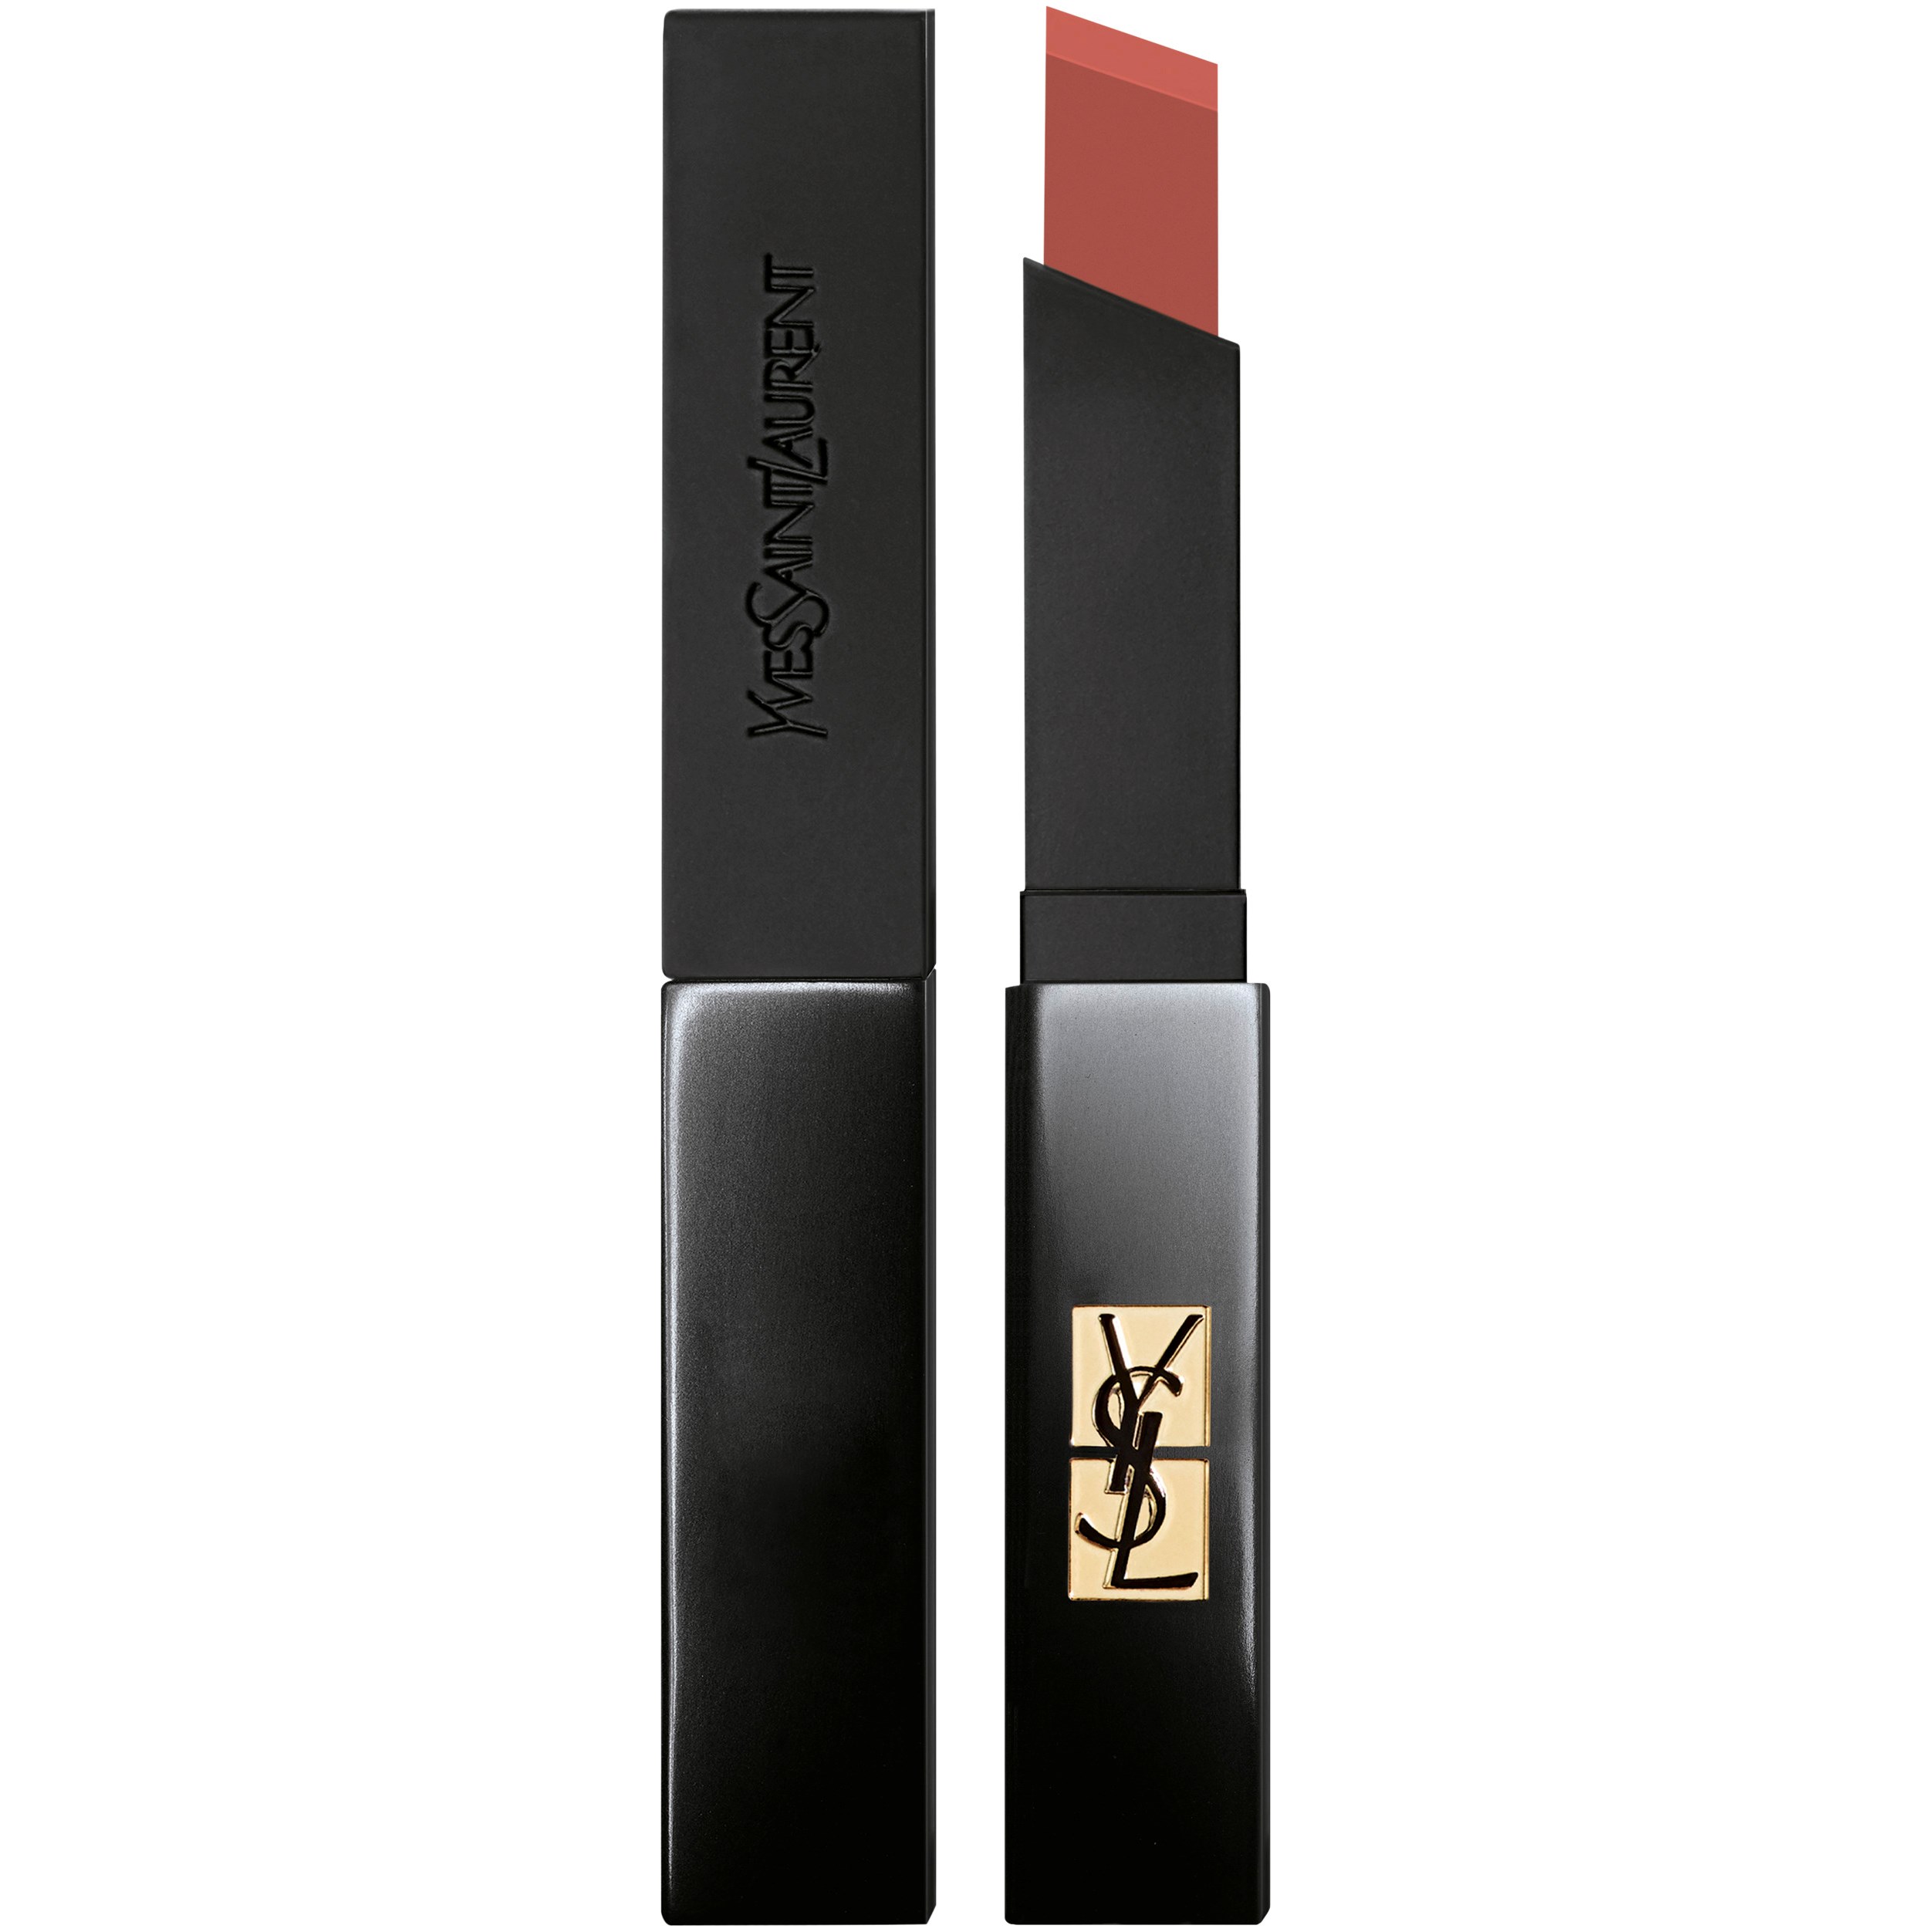 Yves Saint Laurent The Slim Velvet Radical Lipstick 2 st